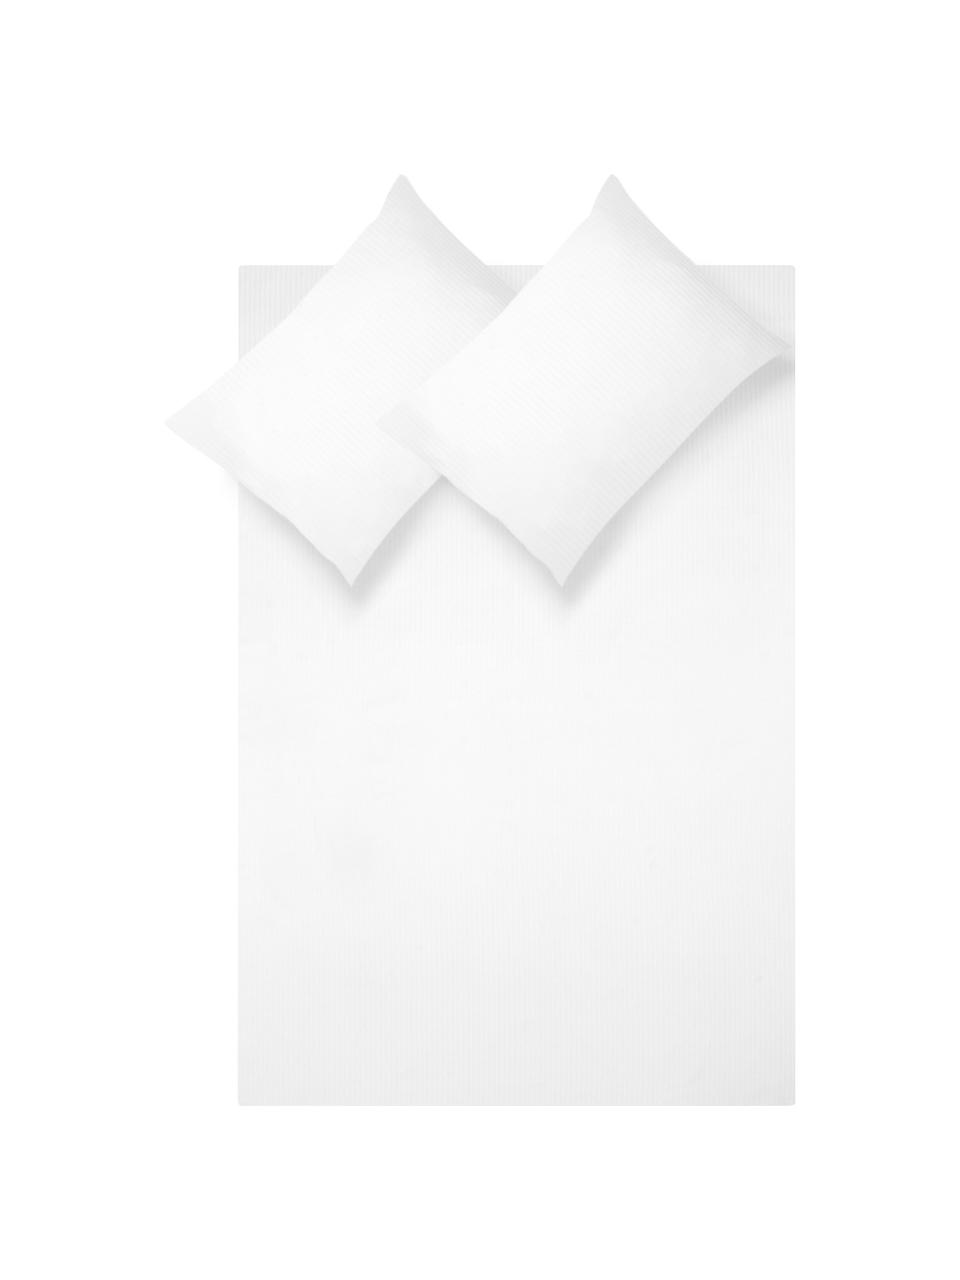 Parure copripiumino in raso di cotone a righe Stella, Tessuto: raso Densità del filo 250, Bianco, 255 x 200 cm, 3 pz